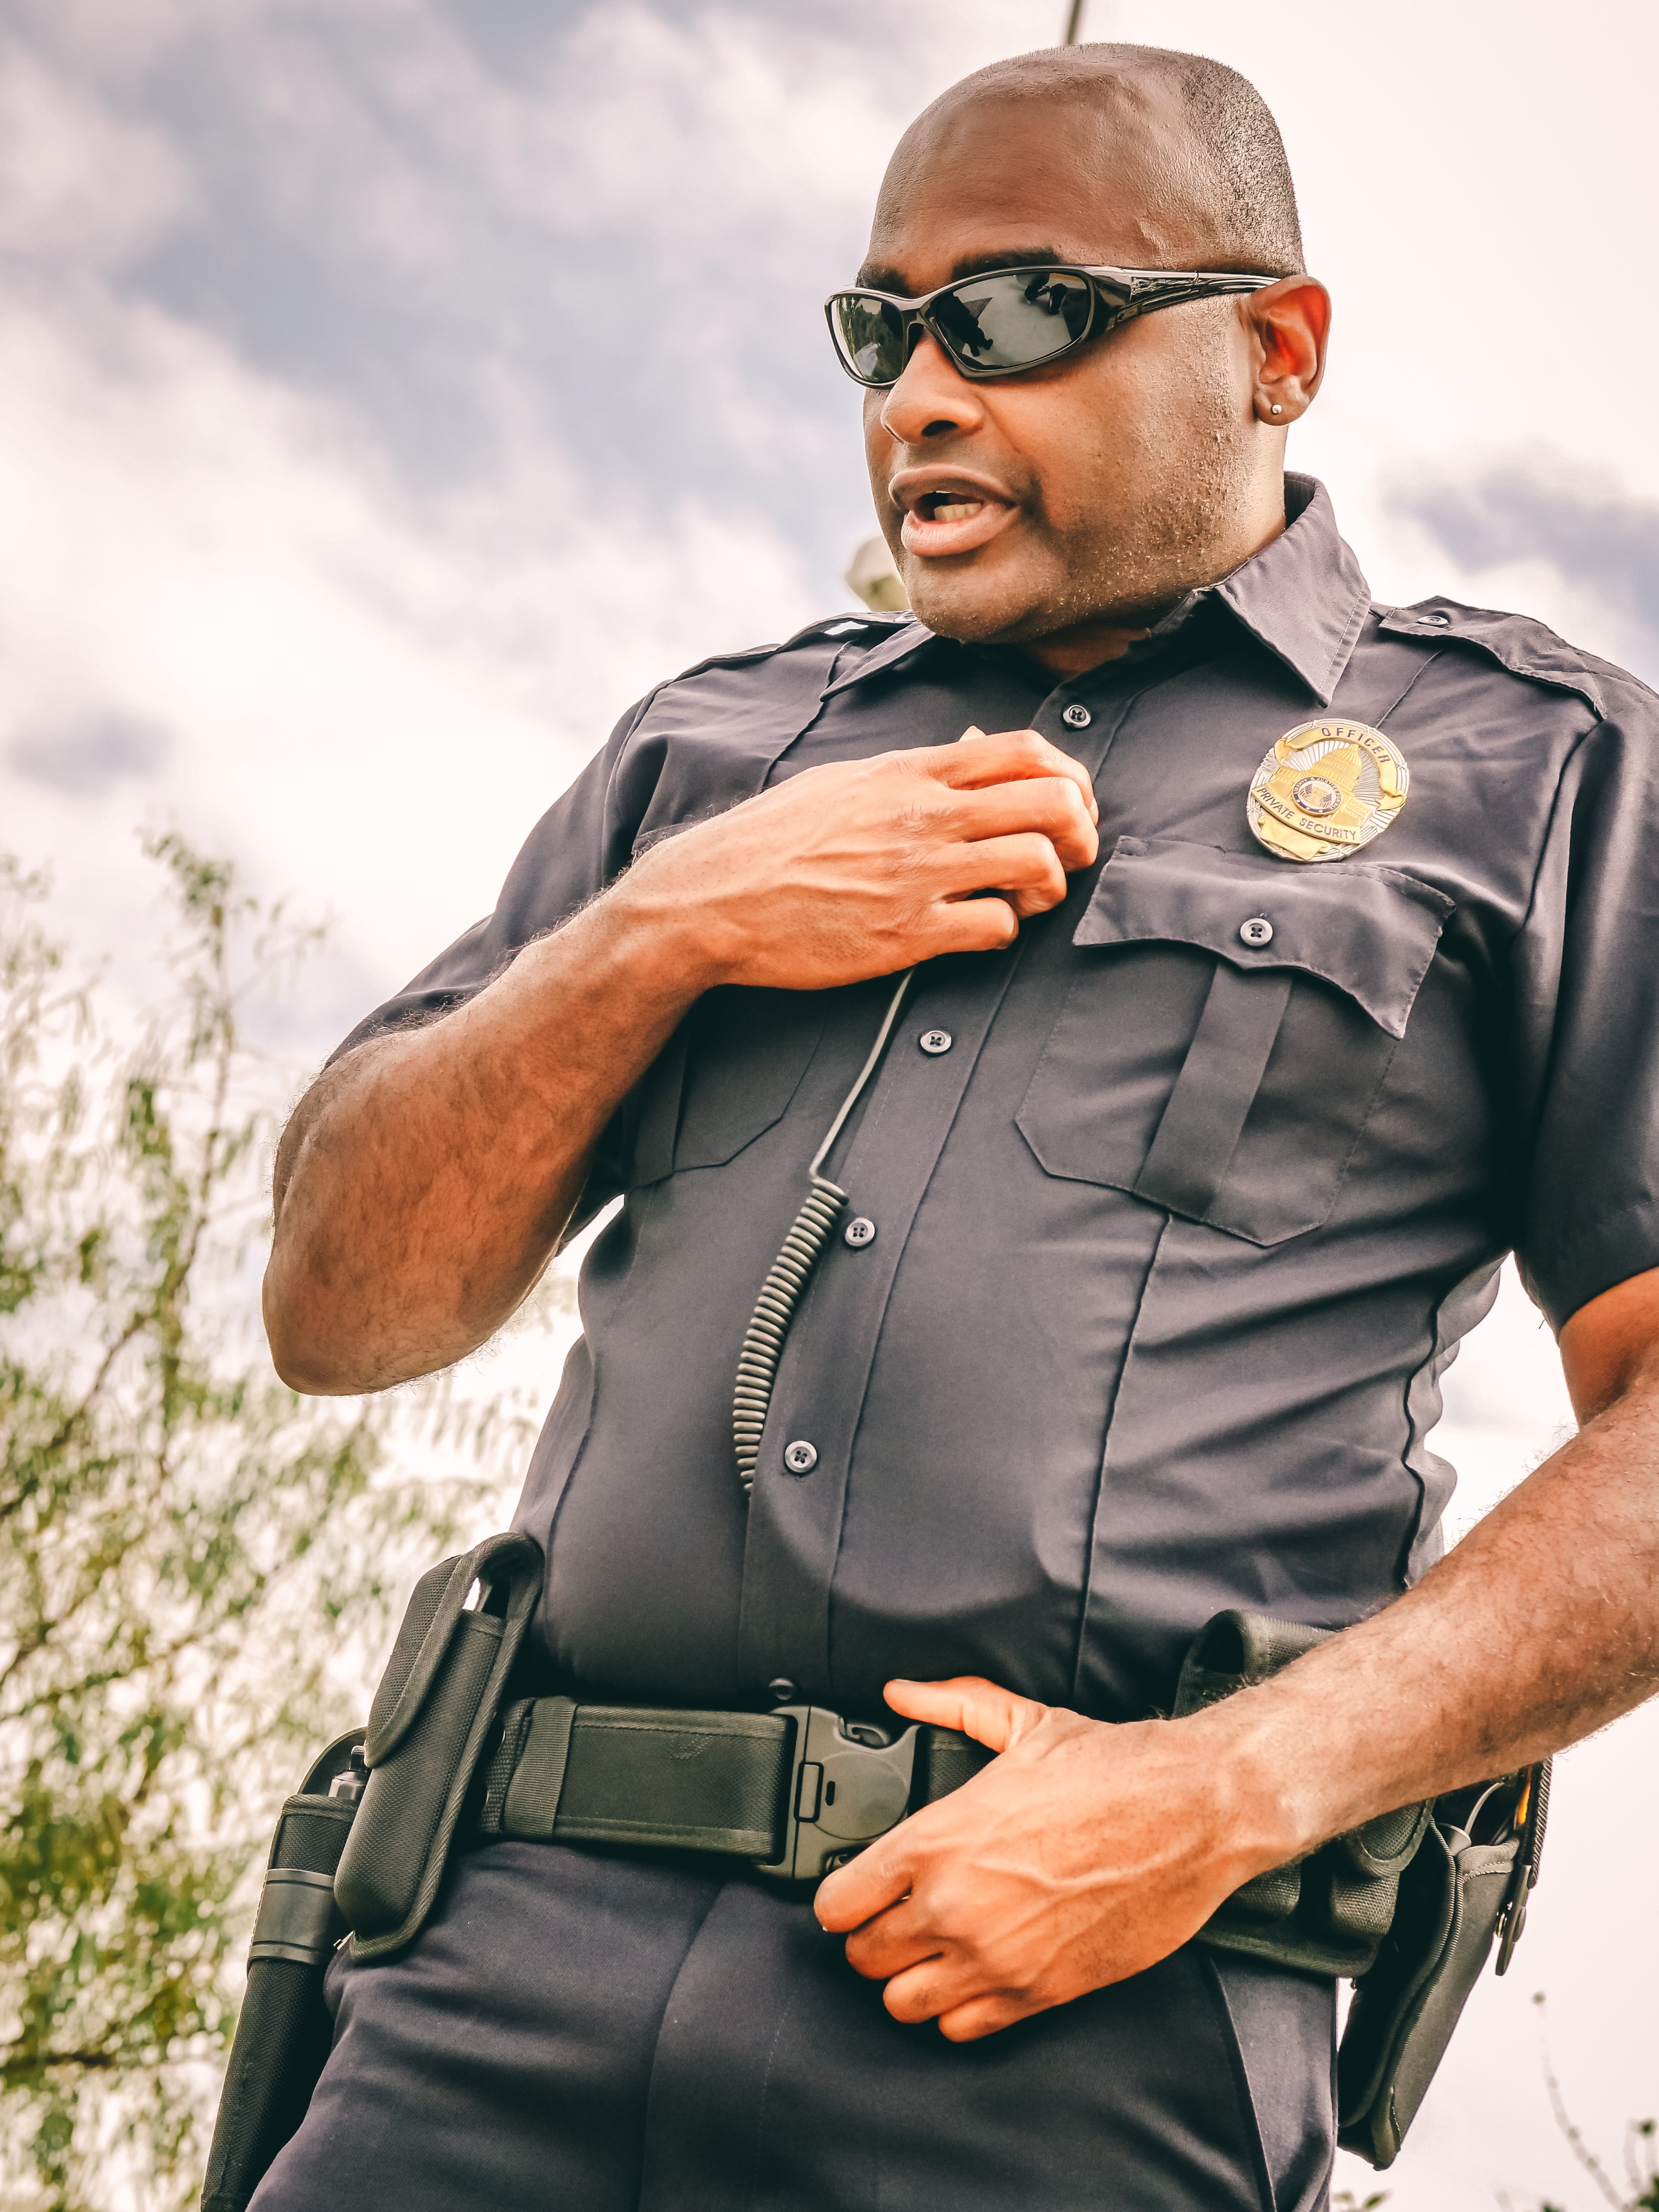 Un policía con gafas de sol negras. | Fuente: Pexels